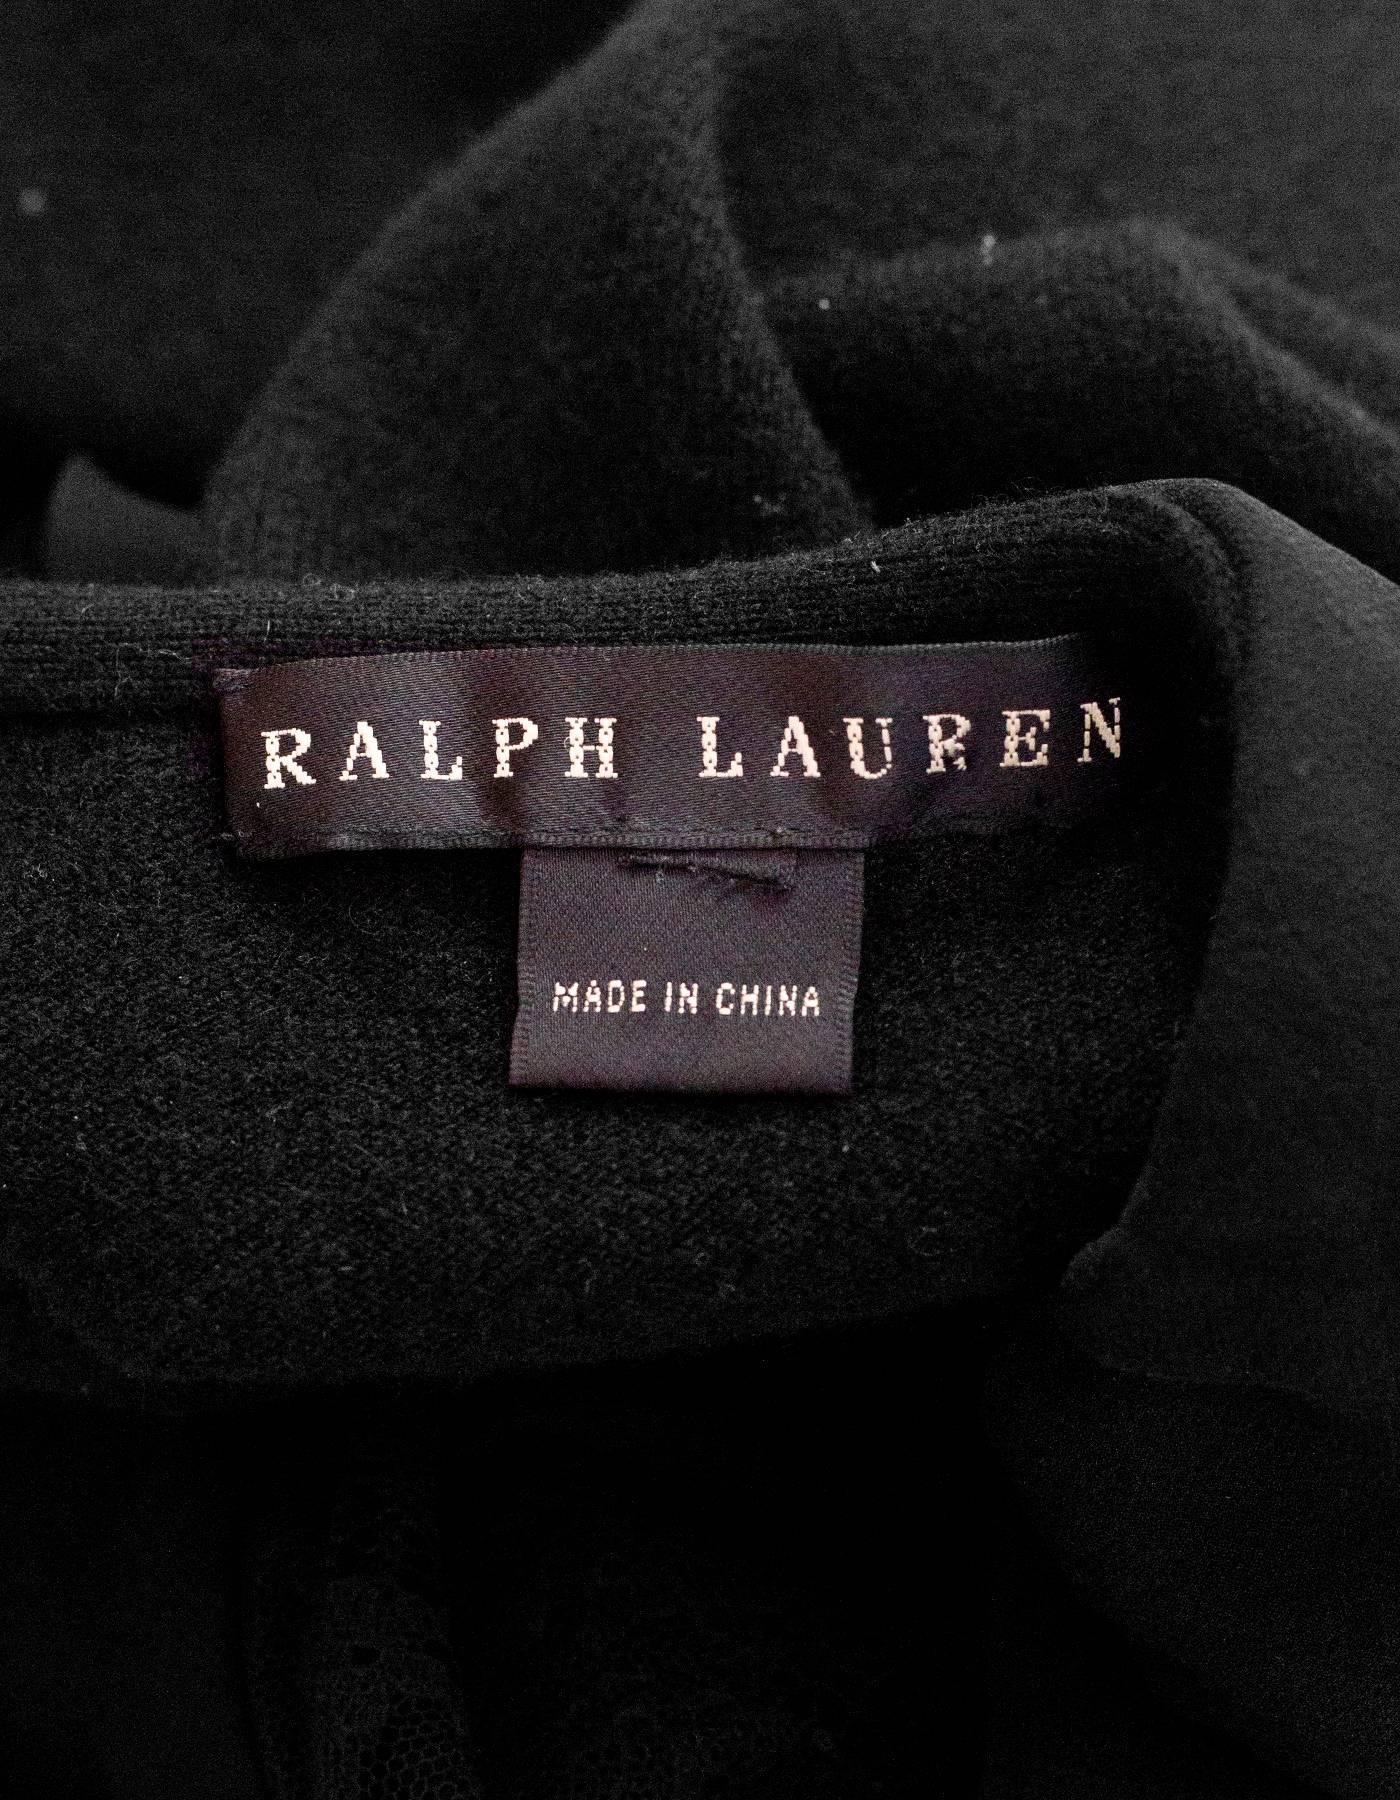 Ralph Lauren Black Cashmere Sleeveless Top sz S 1